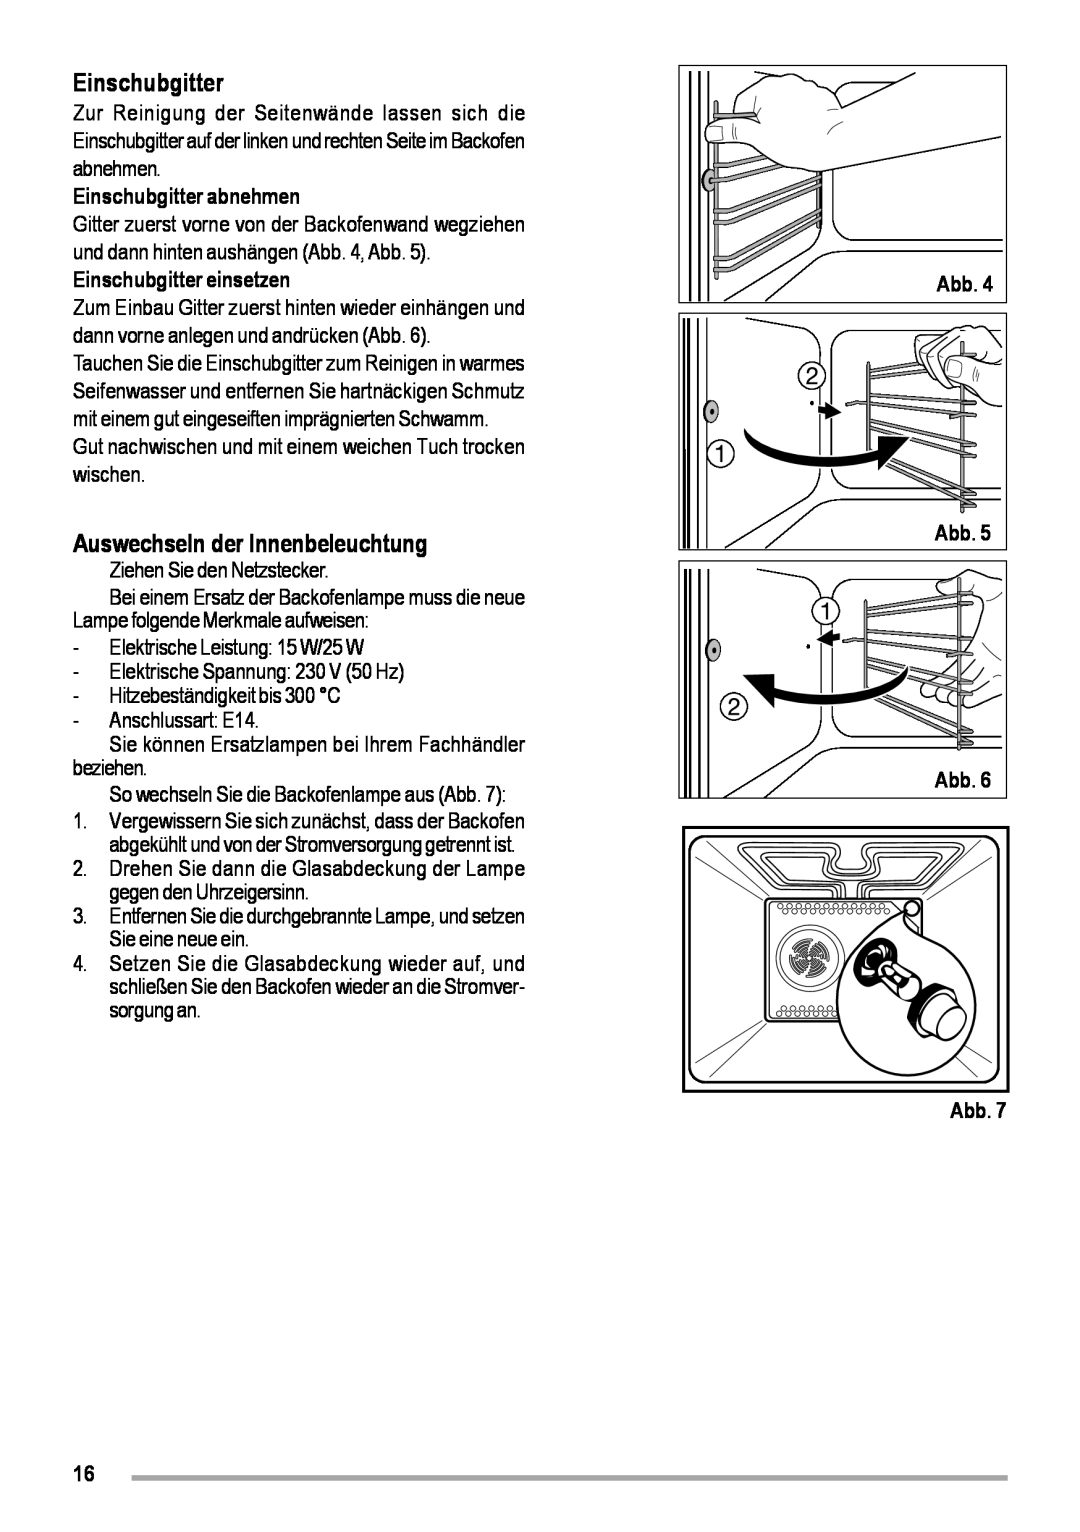 Zanussi ZOB 460 manual Auswechseln der Innenbeleuchtung, Einschubgitter abnehmen, Einschubgitter einsetzen 